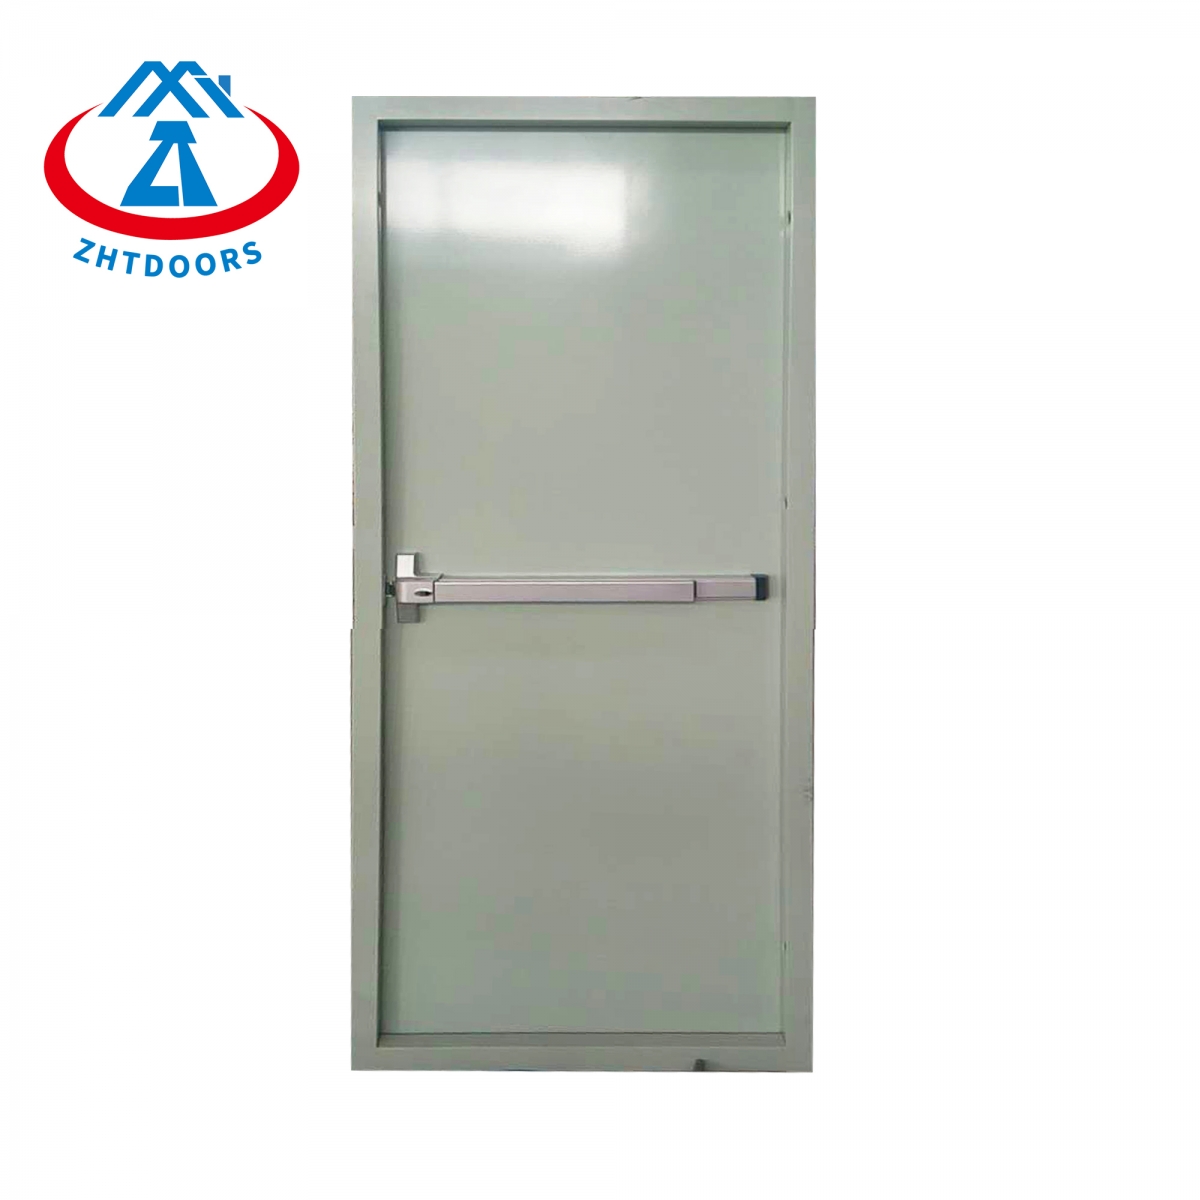 Fire Resistant Steel Door-ZTFIRE Door- Fire Door,Fireproof Door,Fire rated Door,Fire Resistant Door,Steel Door,Metal Door,Exit Door